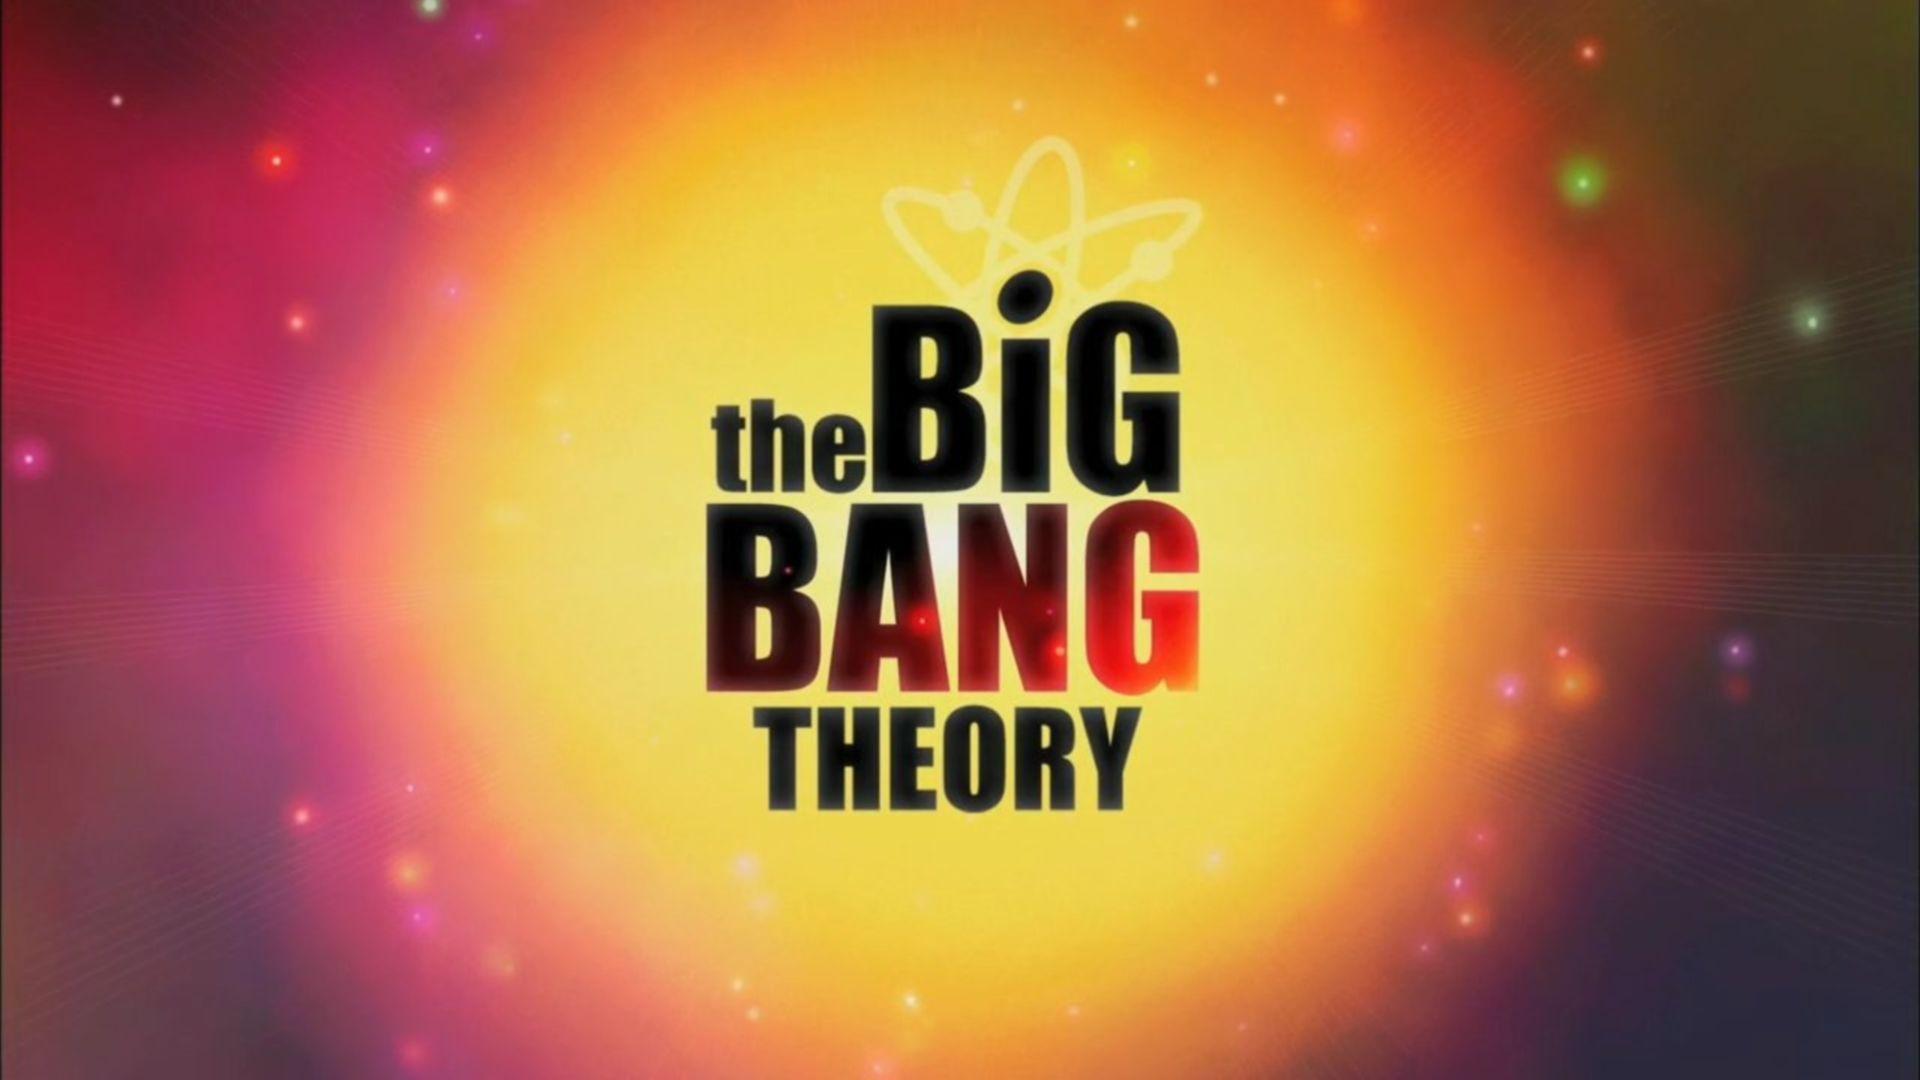 image about The Big Bang Theory. The Big Bang